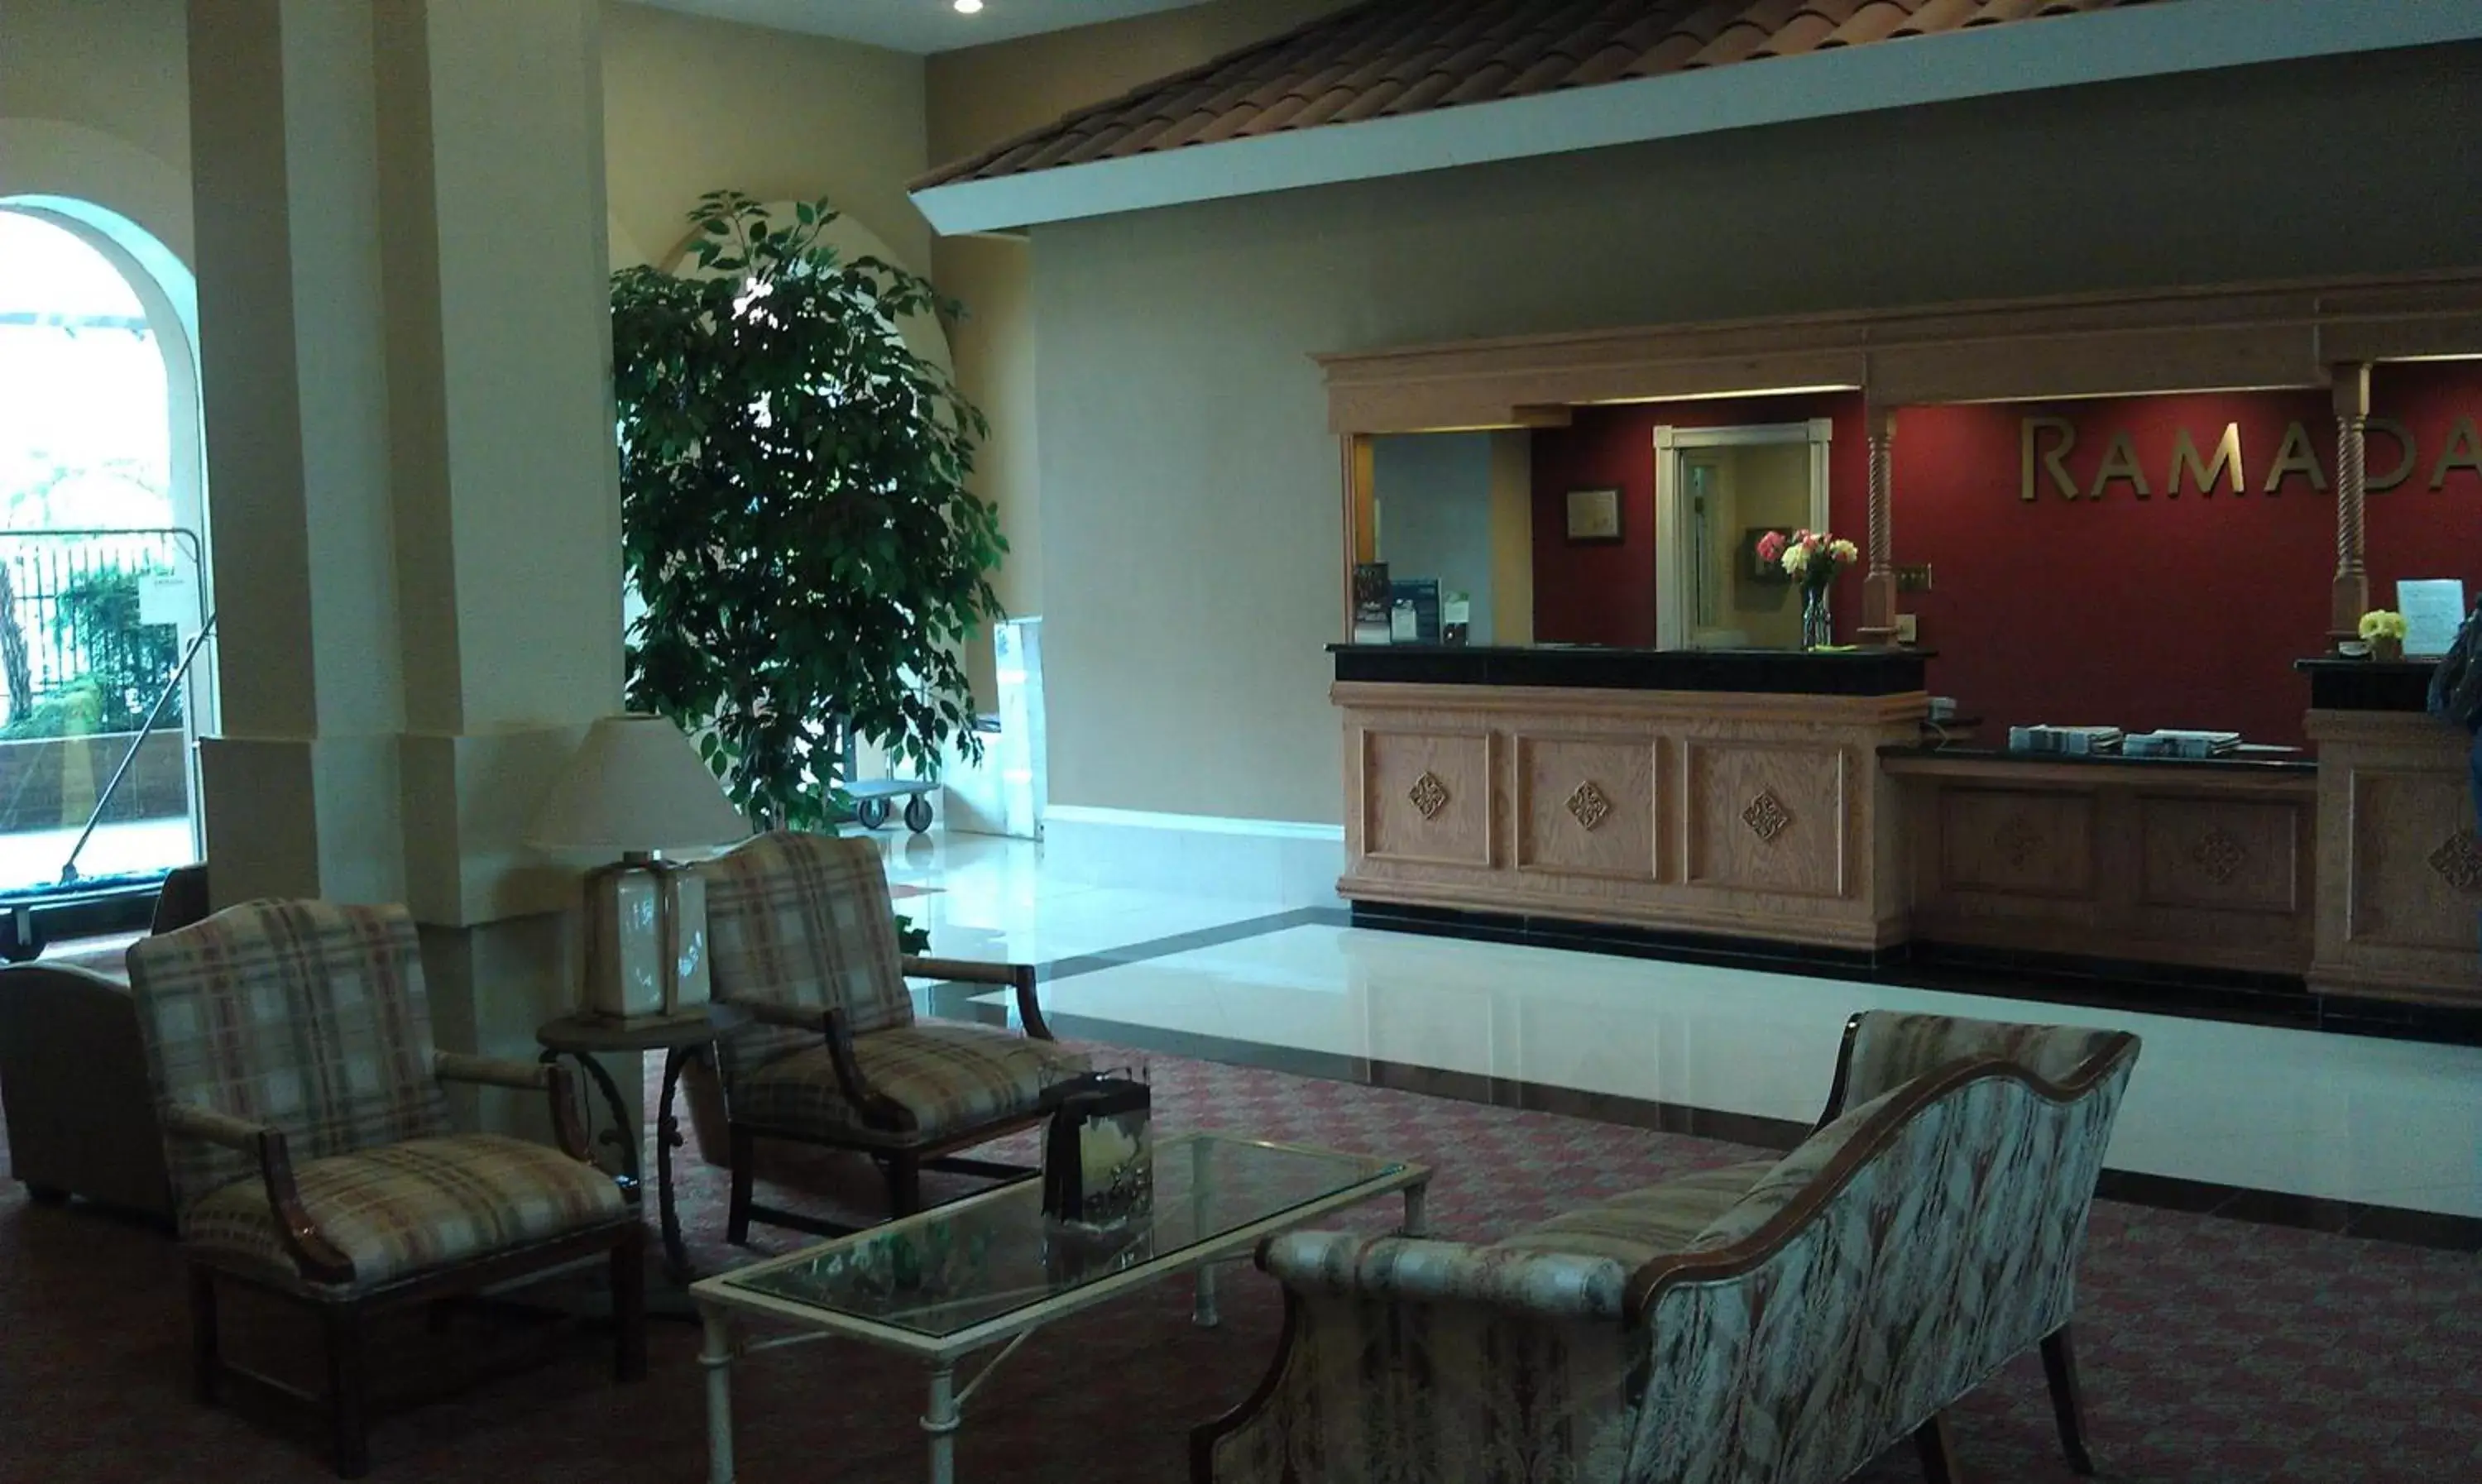 Lobby or reception, Lobby/Reception in Ramada by Wyndham Fresno North